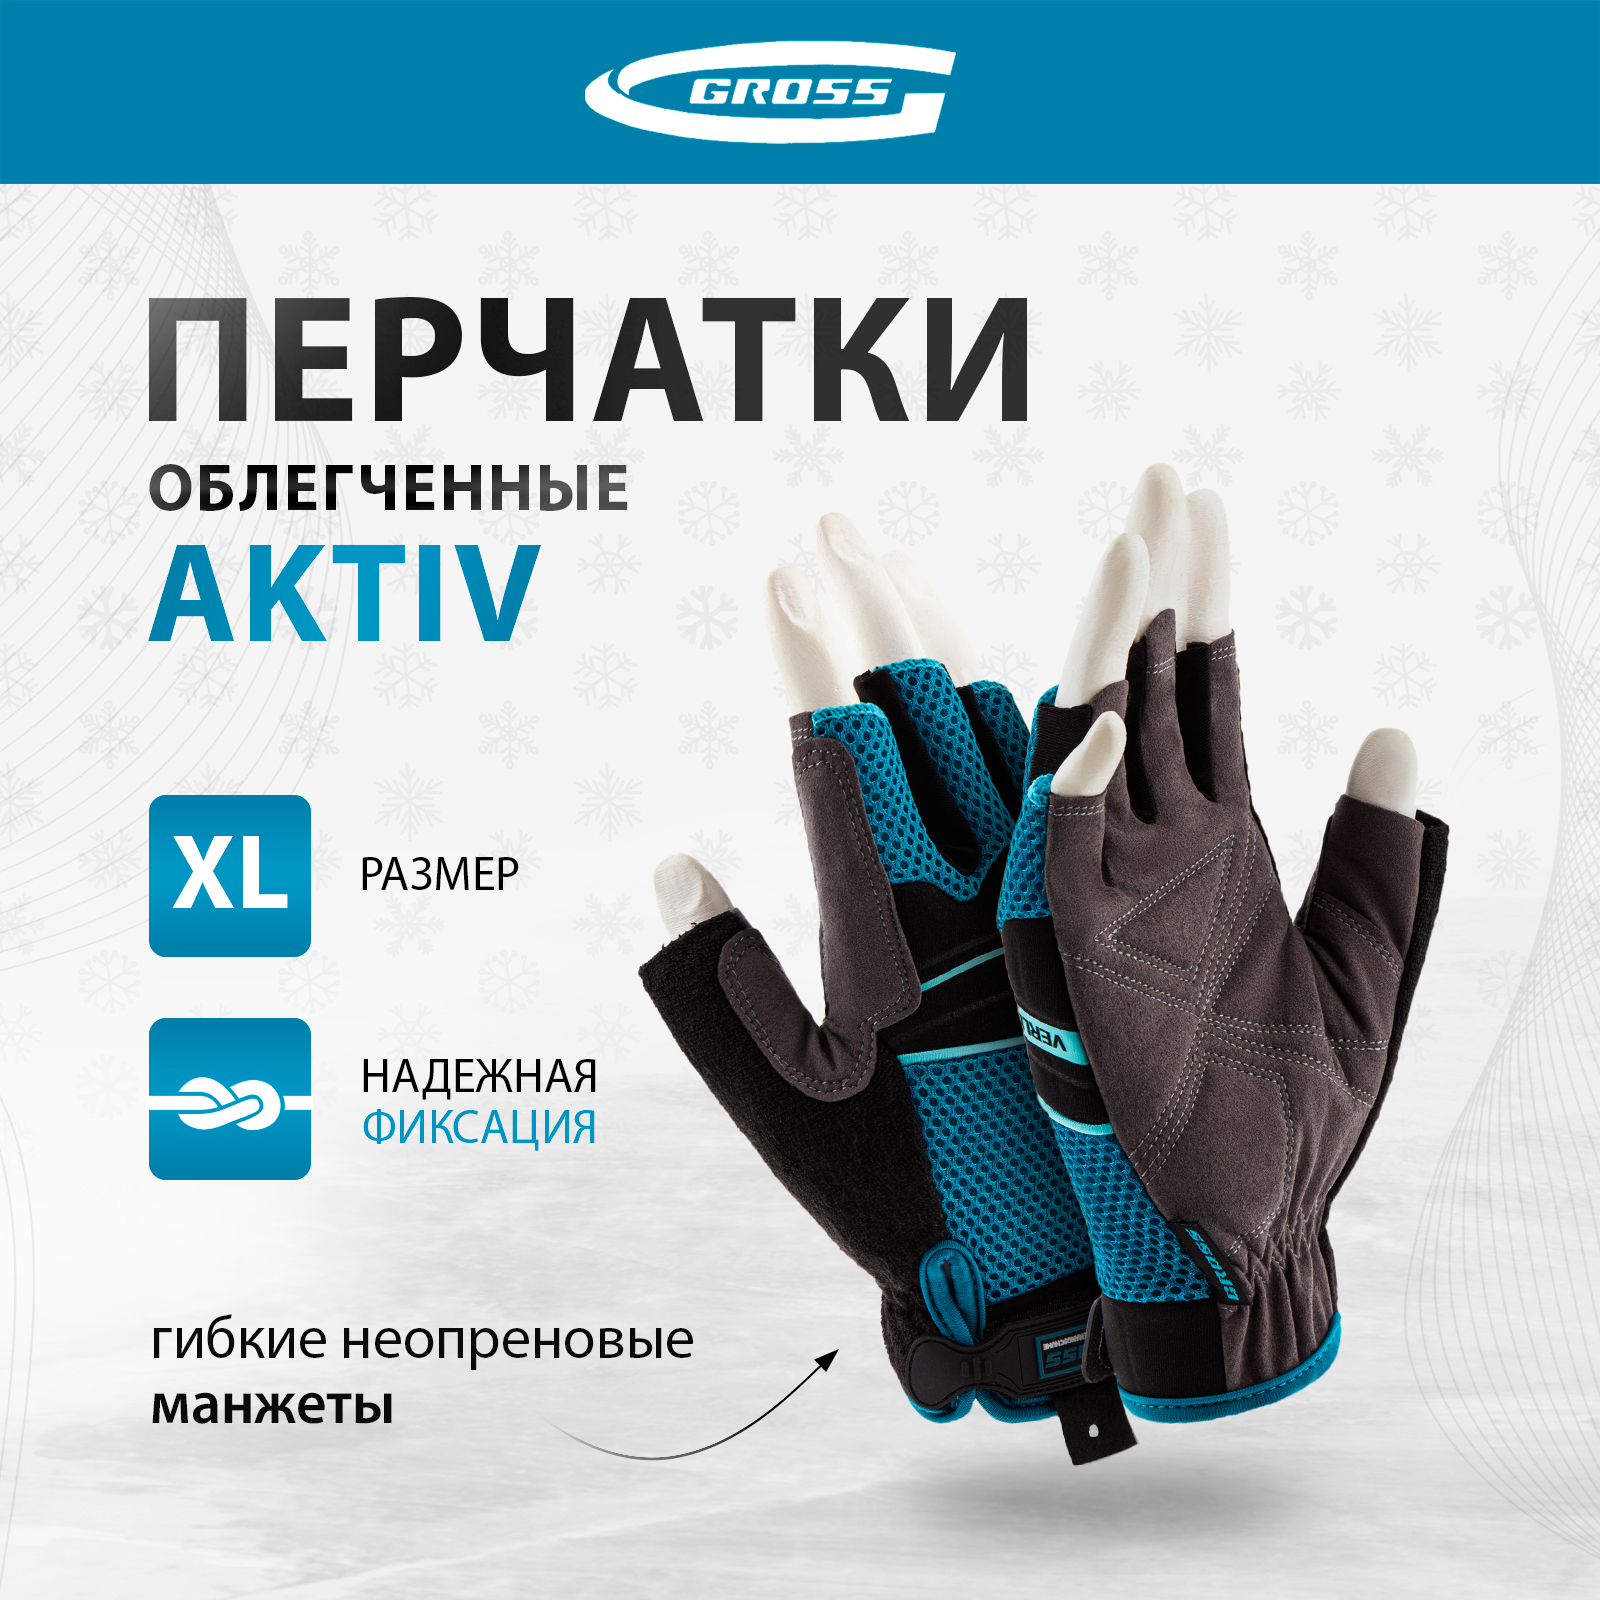 Перчатки комбинированные облегченные GROSS AKTIV открытые пальцыразмер XL (10) 90310 перчатки универсальные комбинированные gross stylish с накладками р l 9 90319